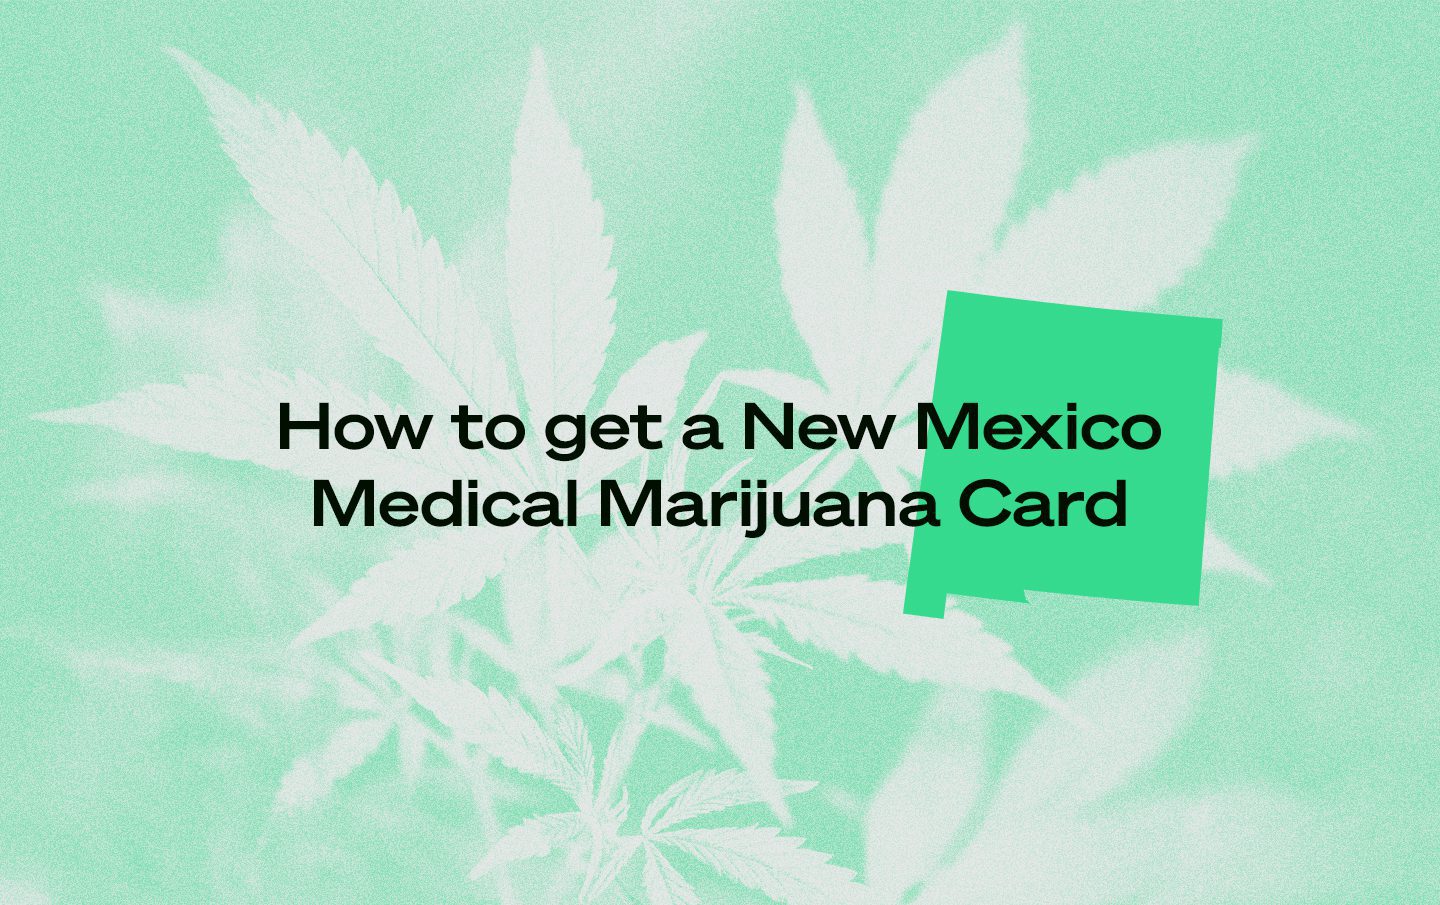 New Mexico Medical Marijuana Card